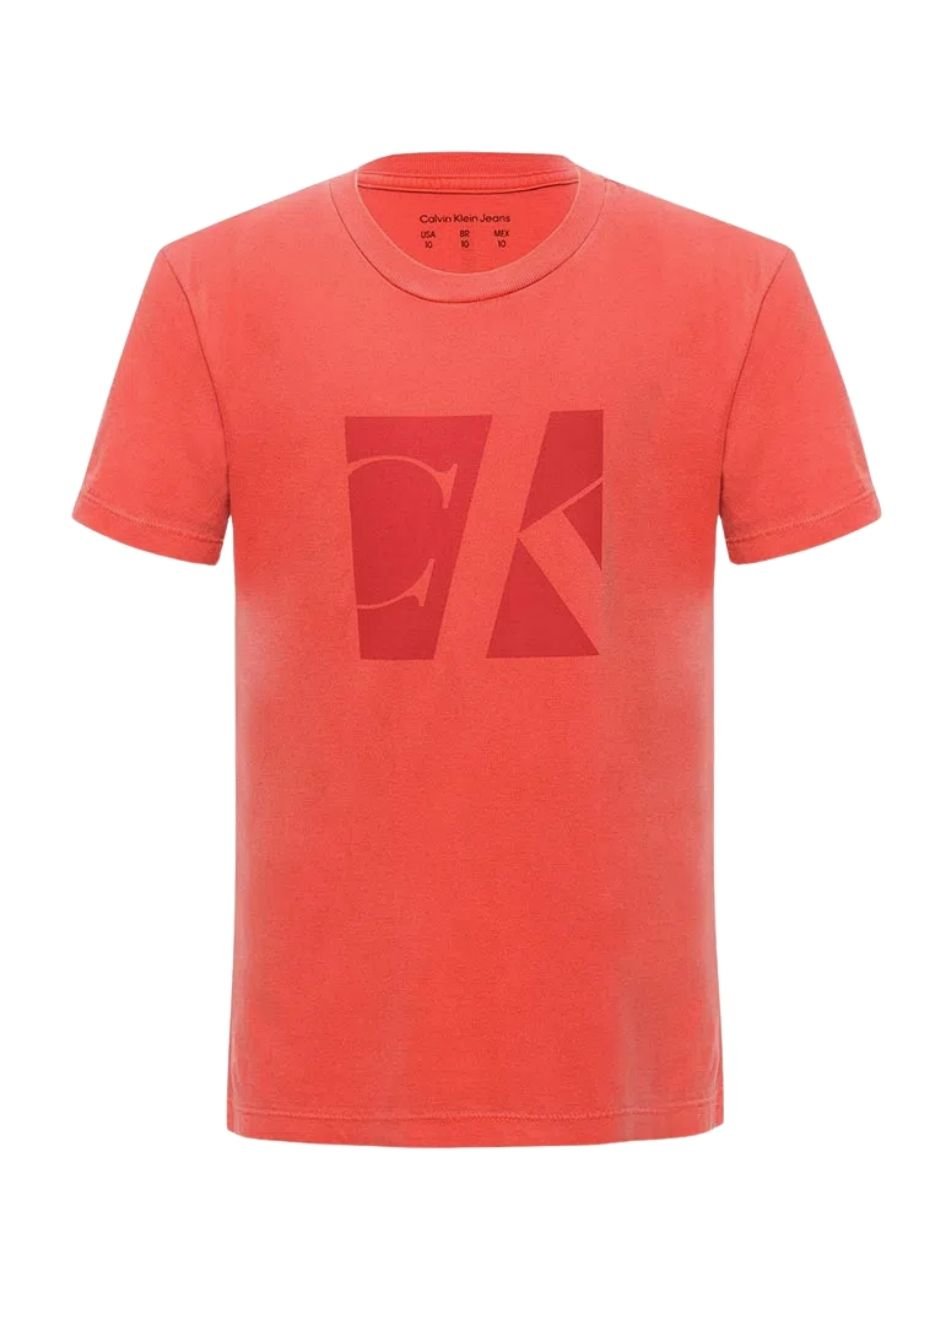 Camiseta Calvin Klein Jeans Infantil CK CK Quadro Vermelho